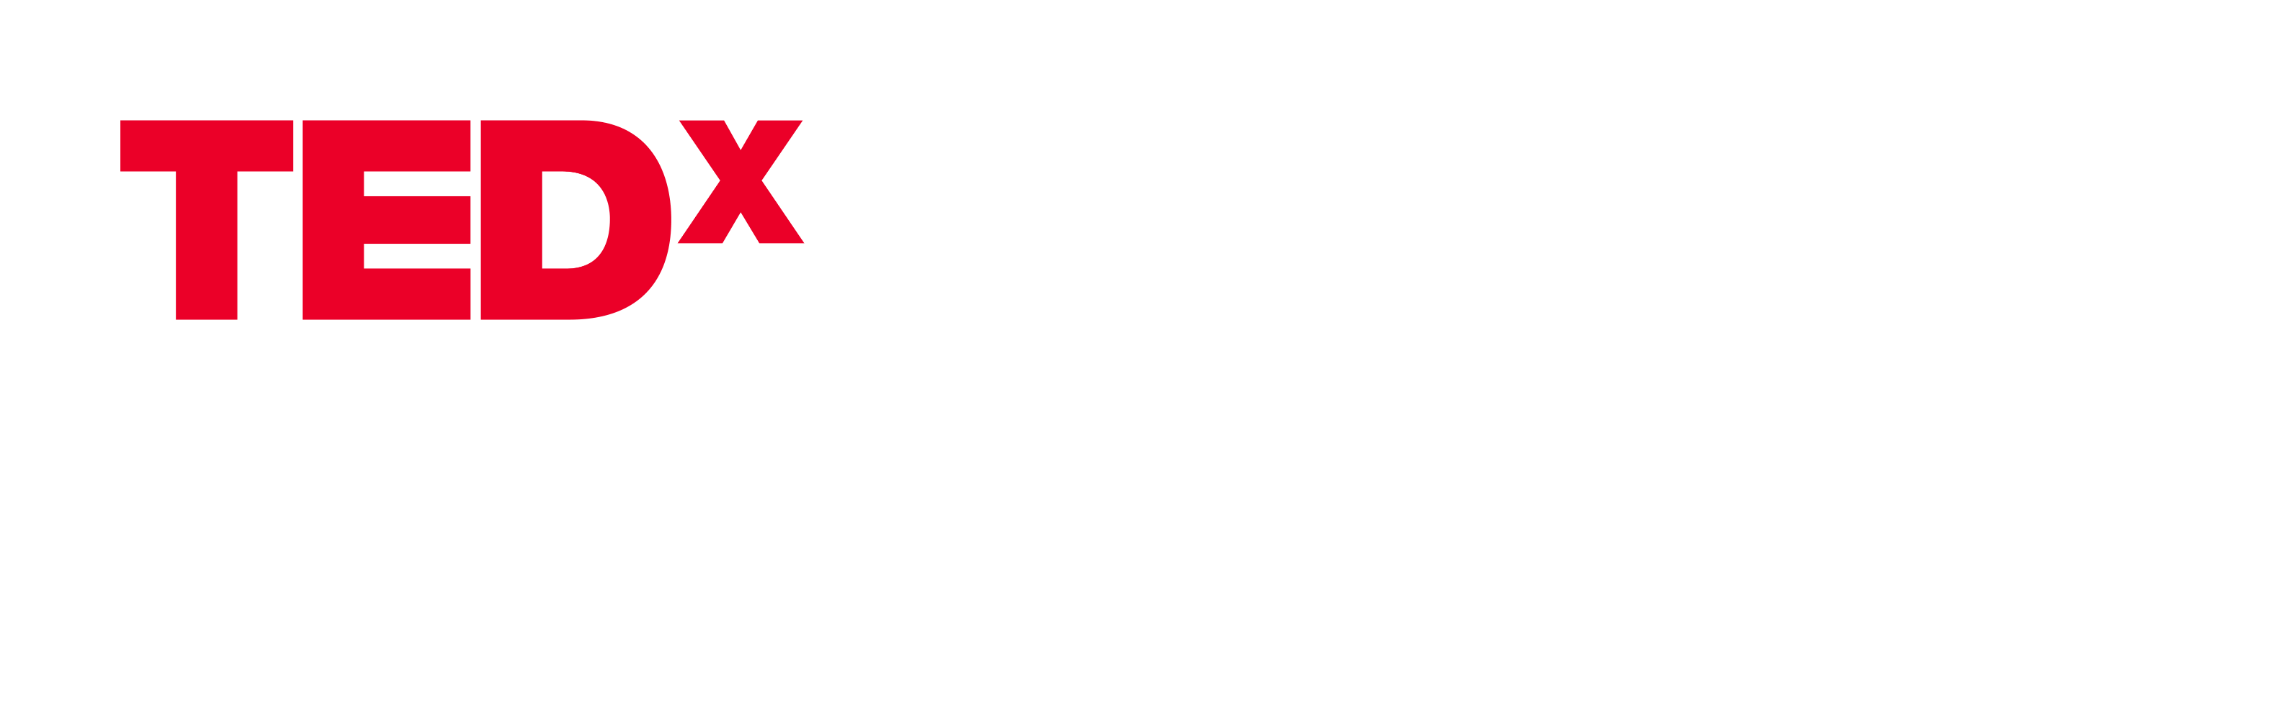 TEDxLaChauxdeFonds